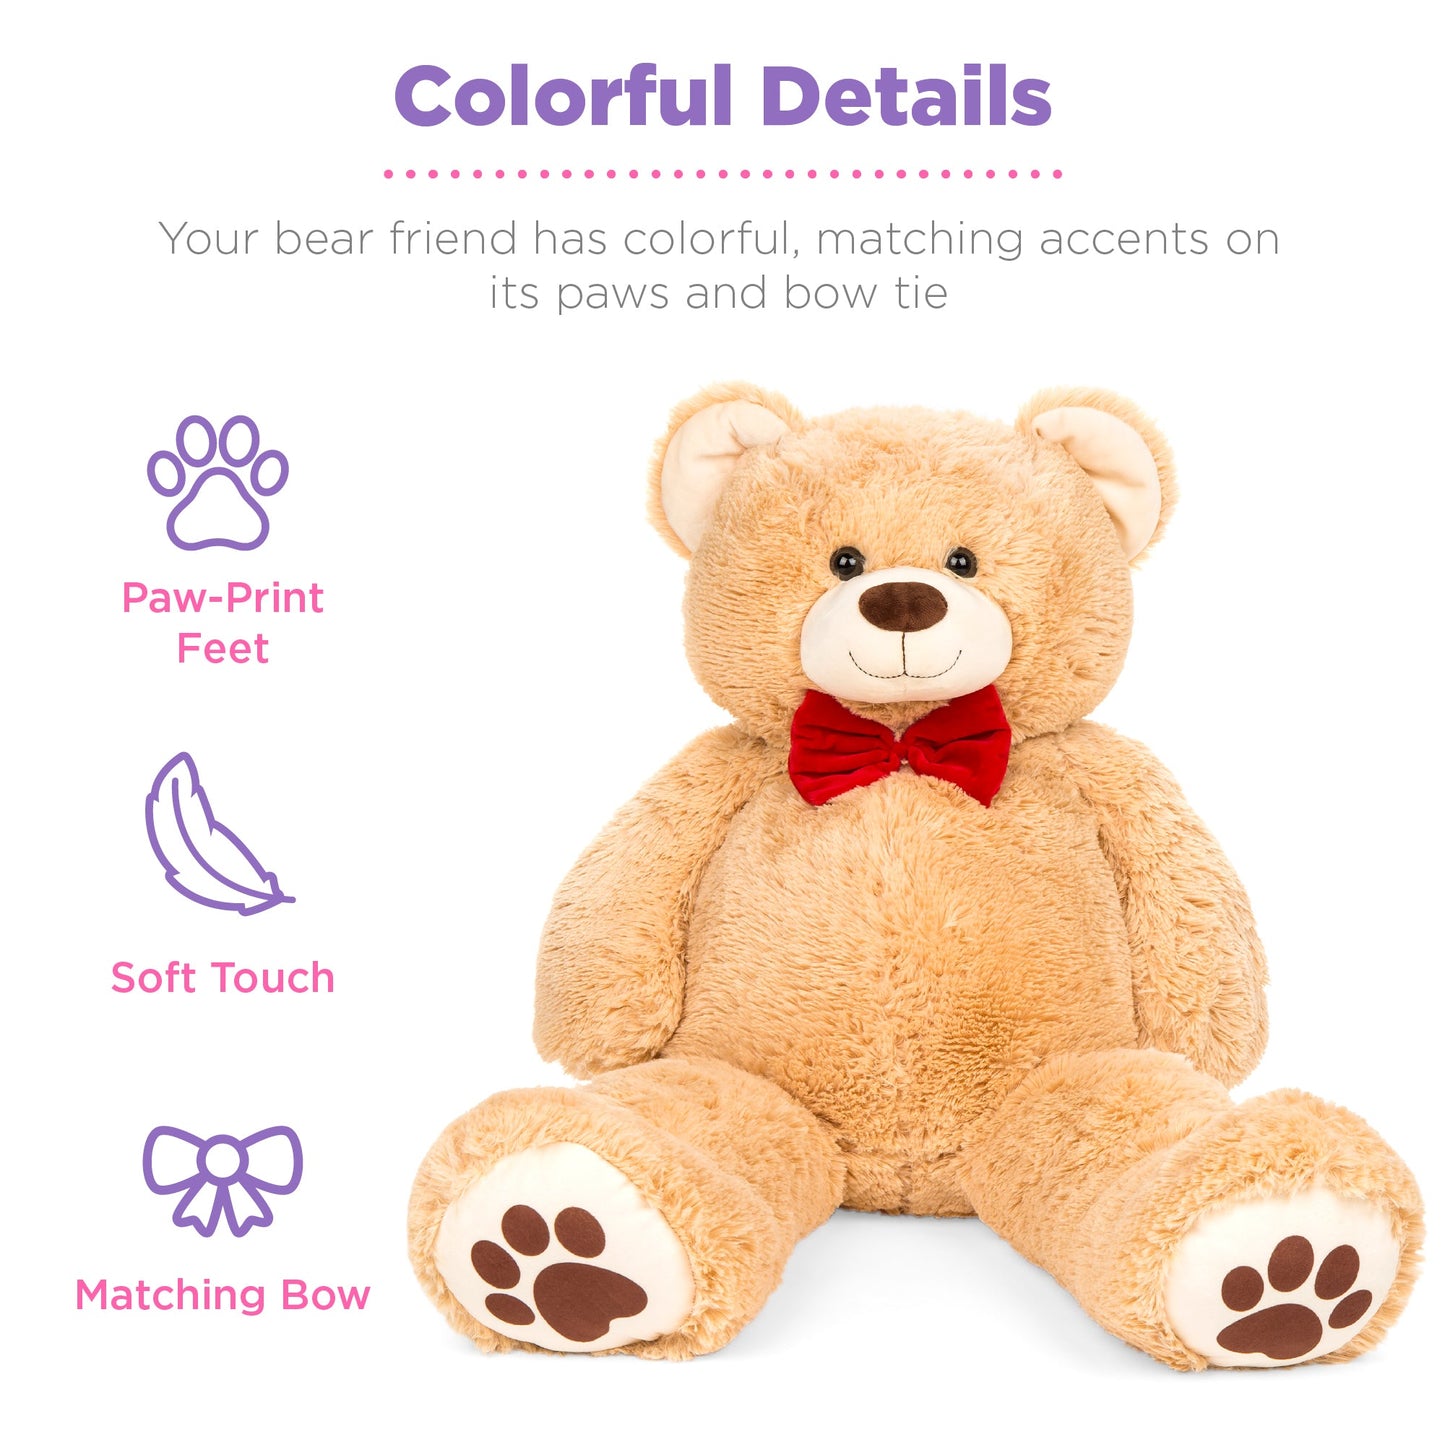 Giant Plush Teddy Bear Stuffed Animal w/ Bow Tie, Paw Prints - 38in